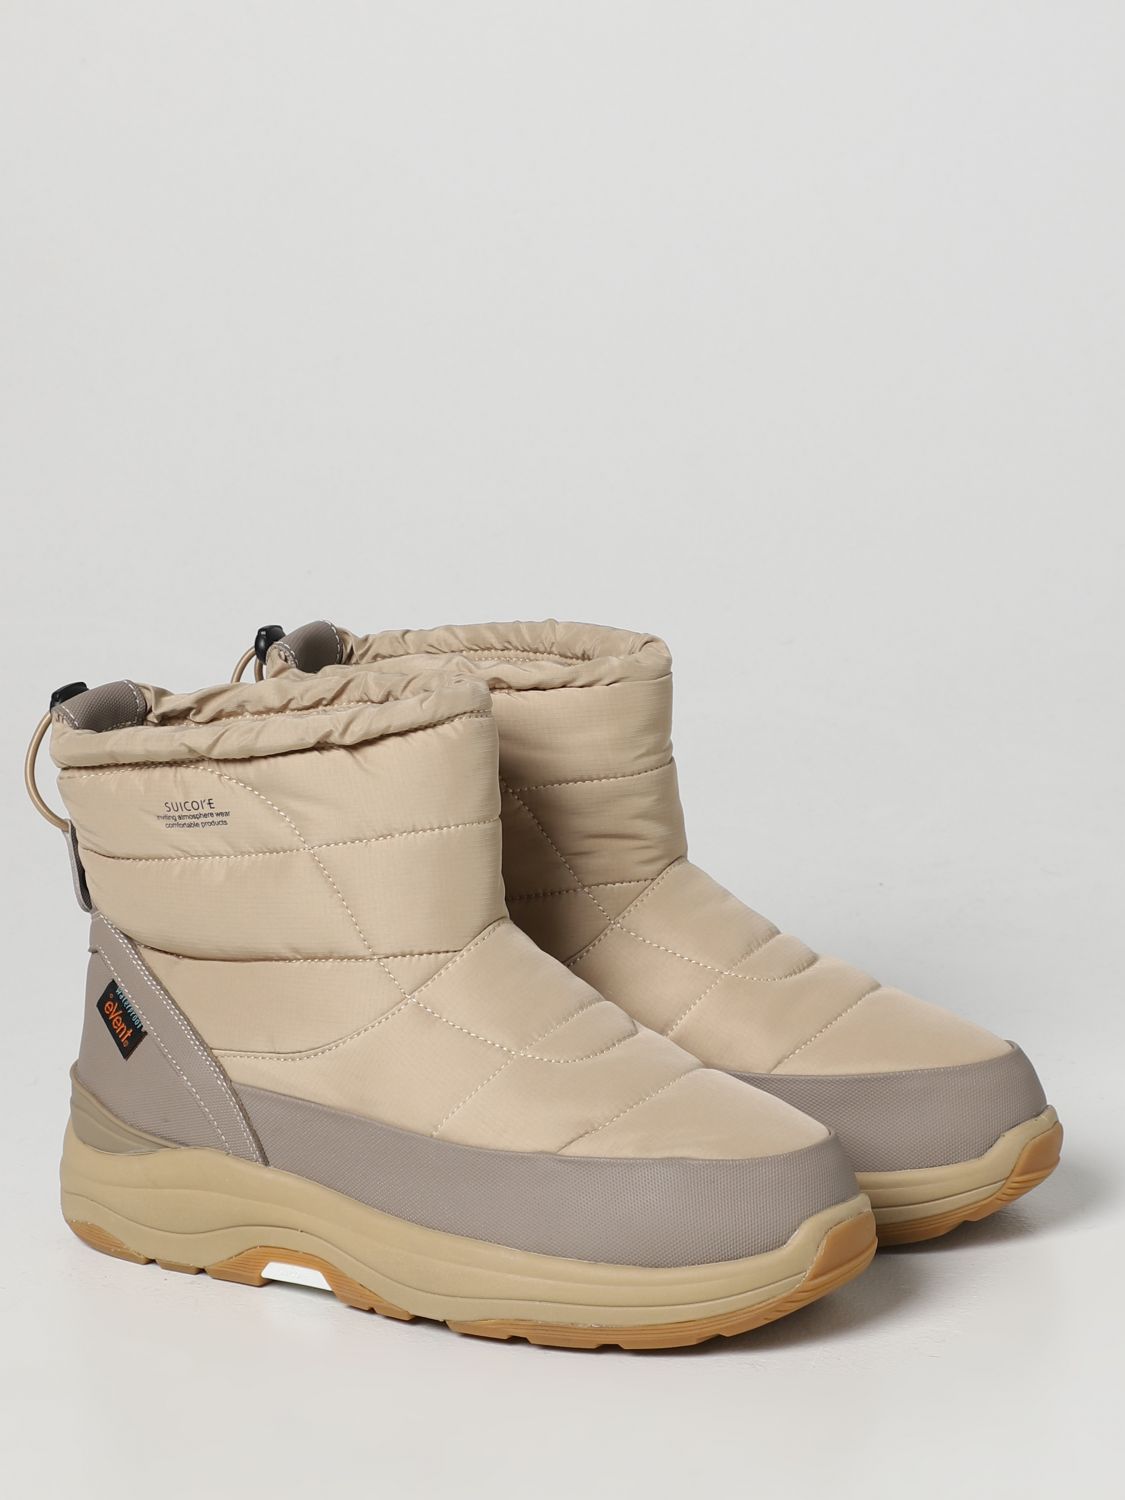 Boots Suicoke: Suicoke boots for man beige 2